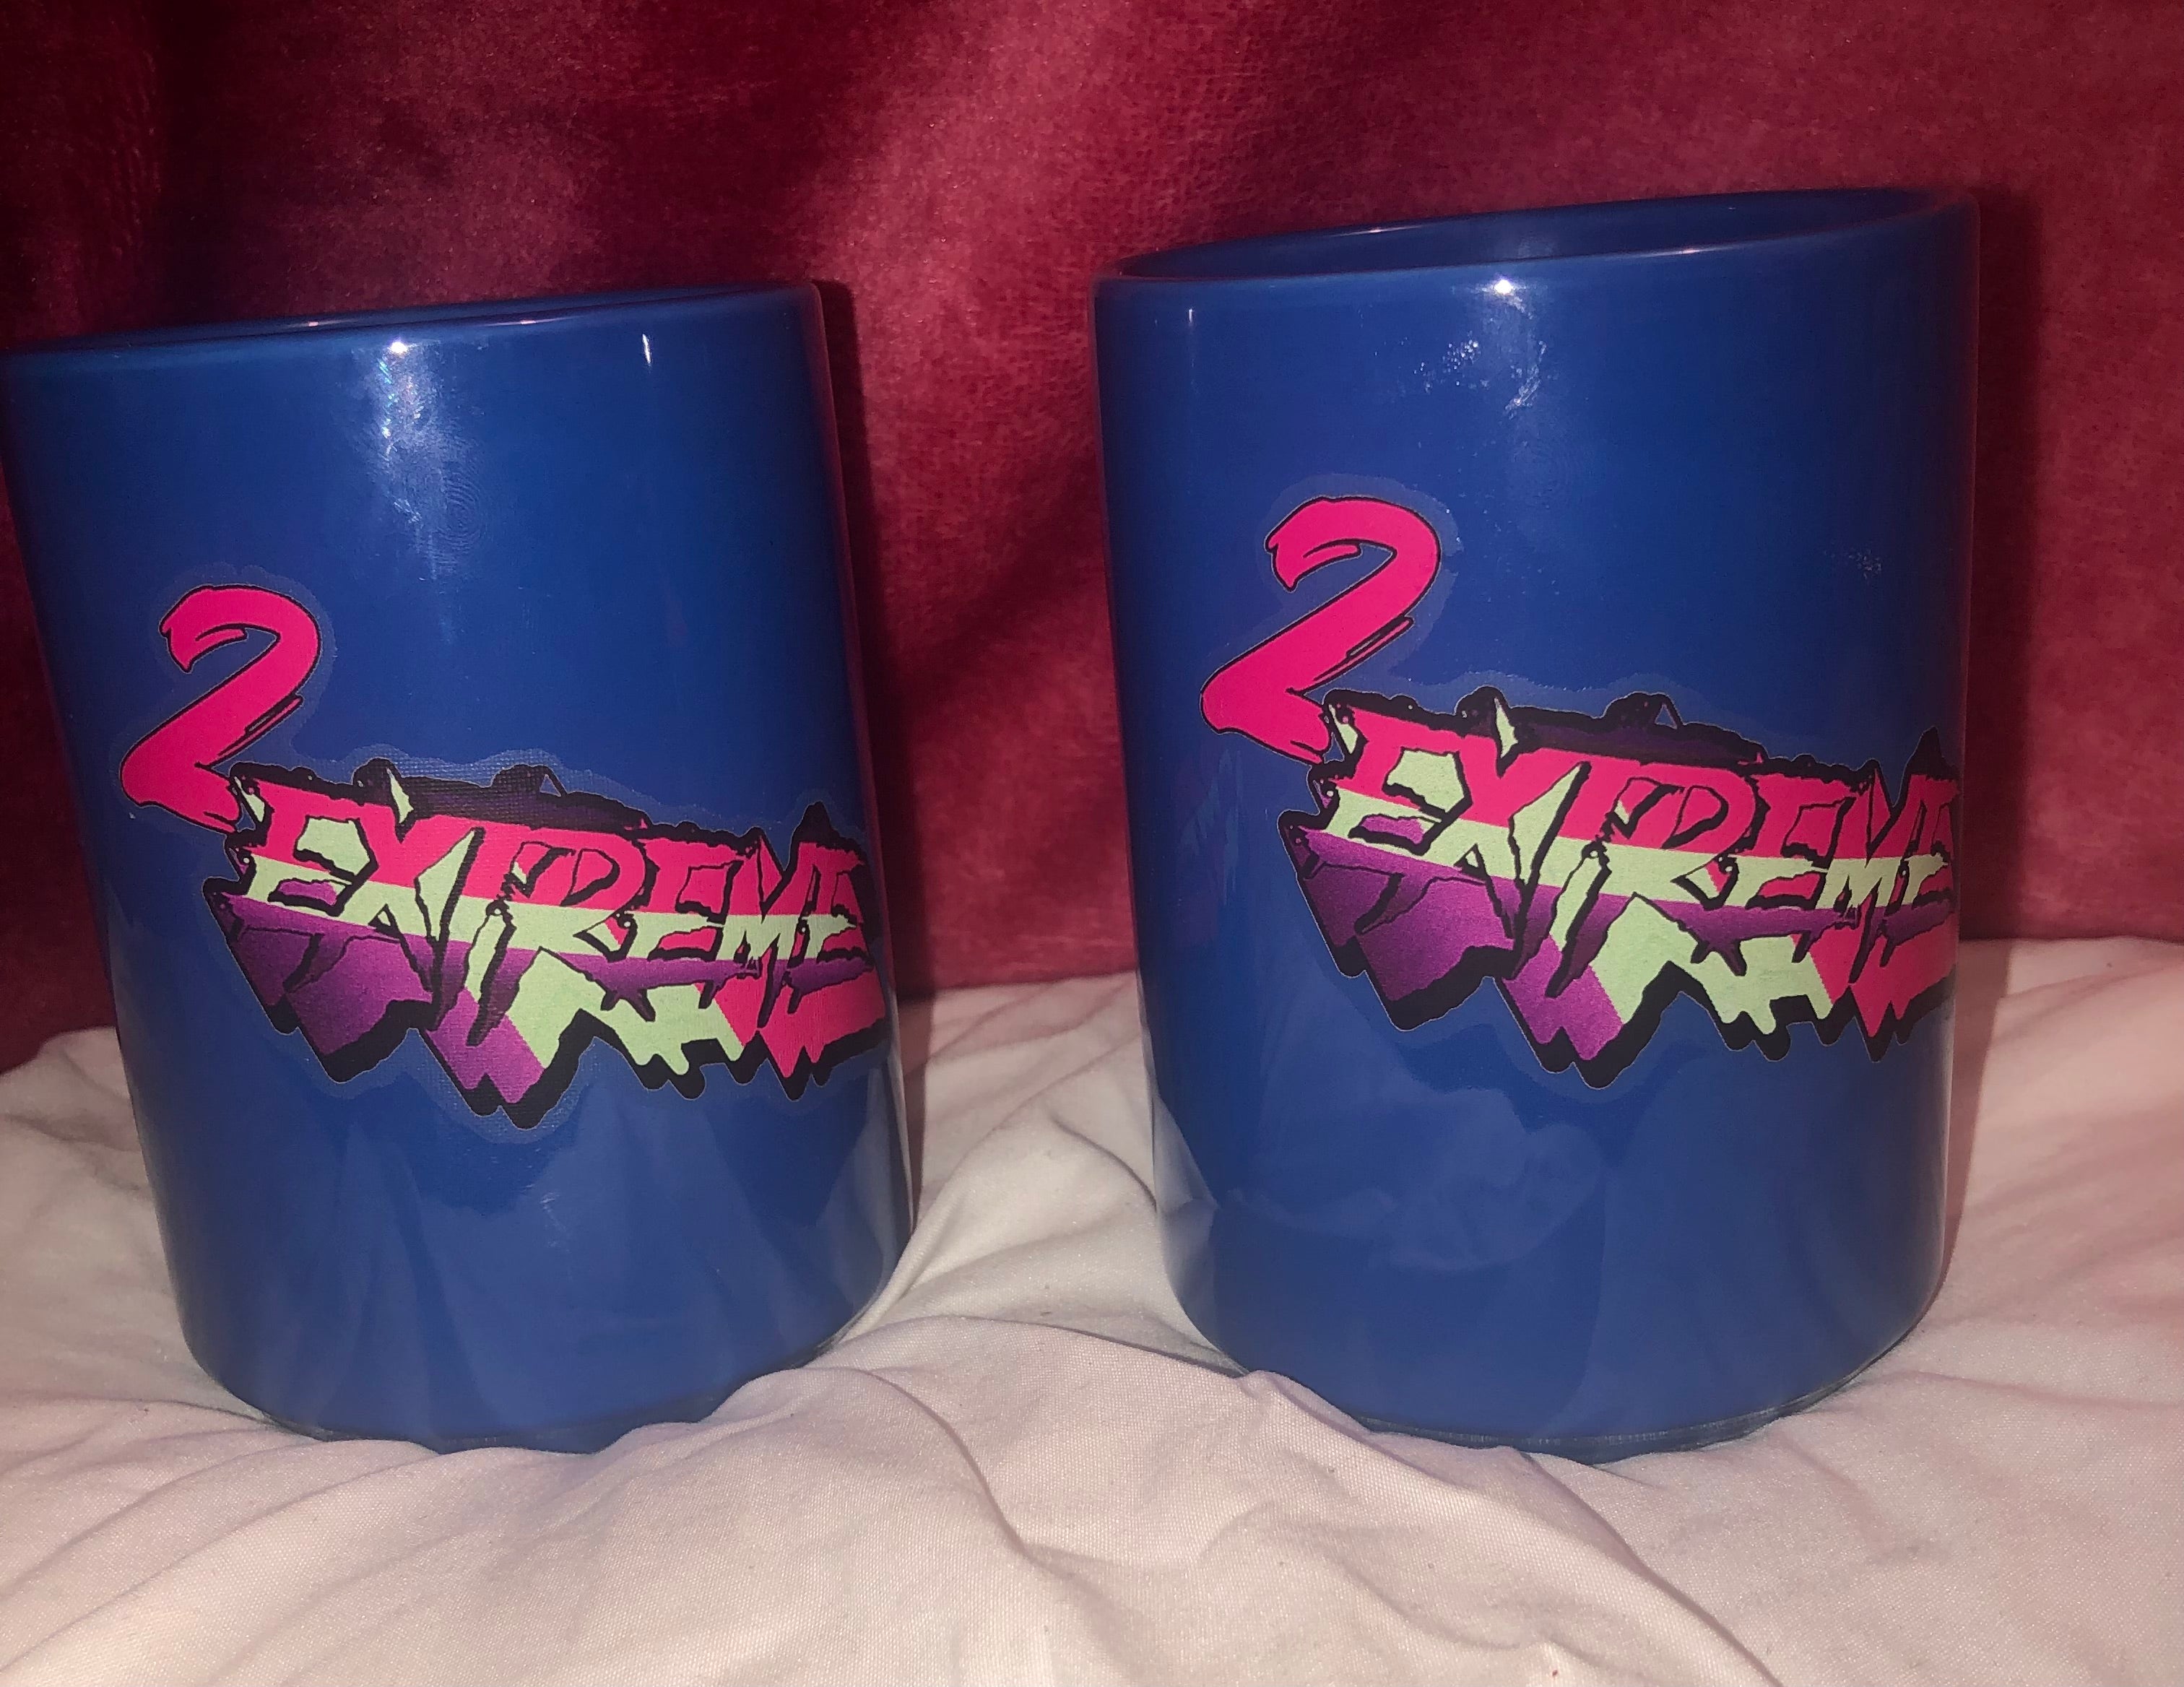 2Extreme-Blue mugs